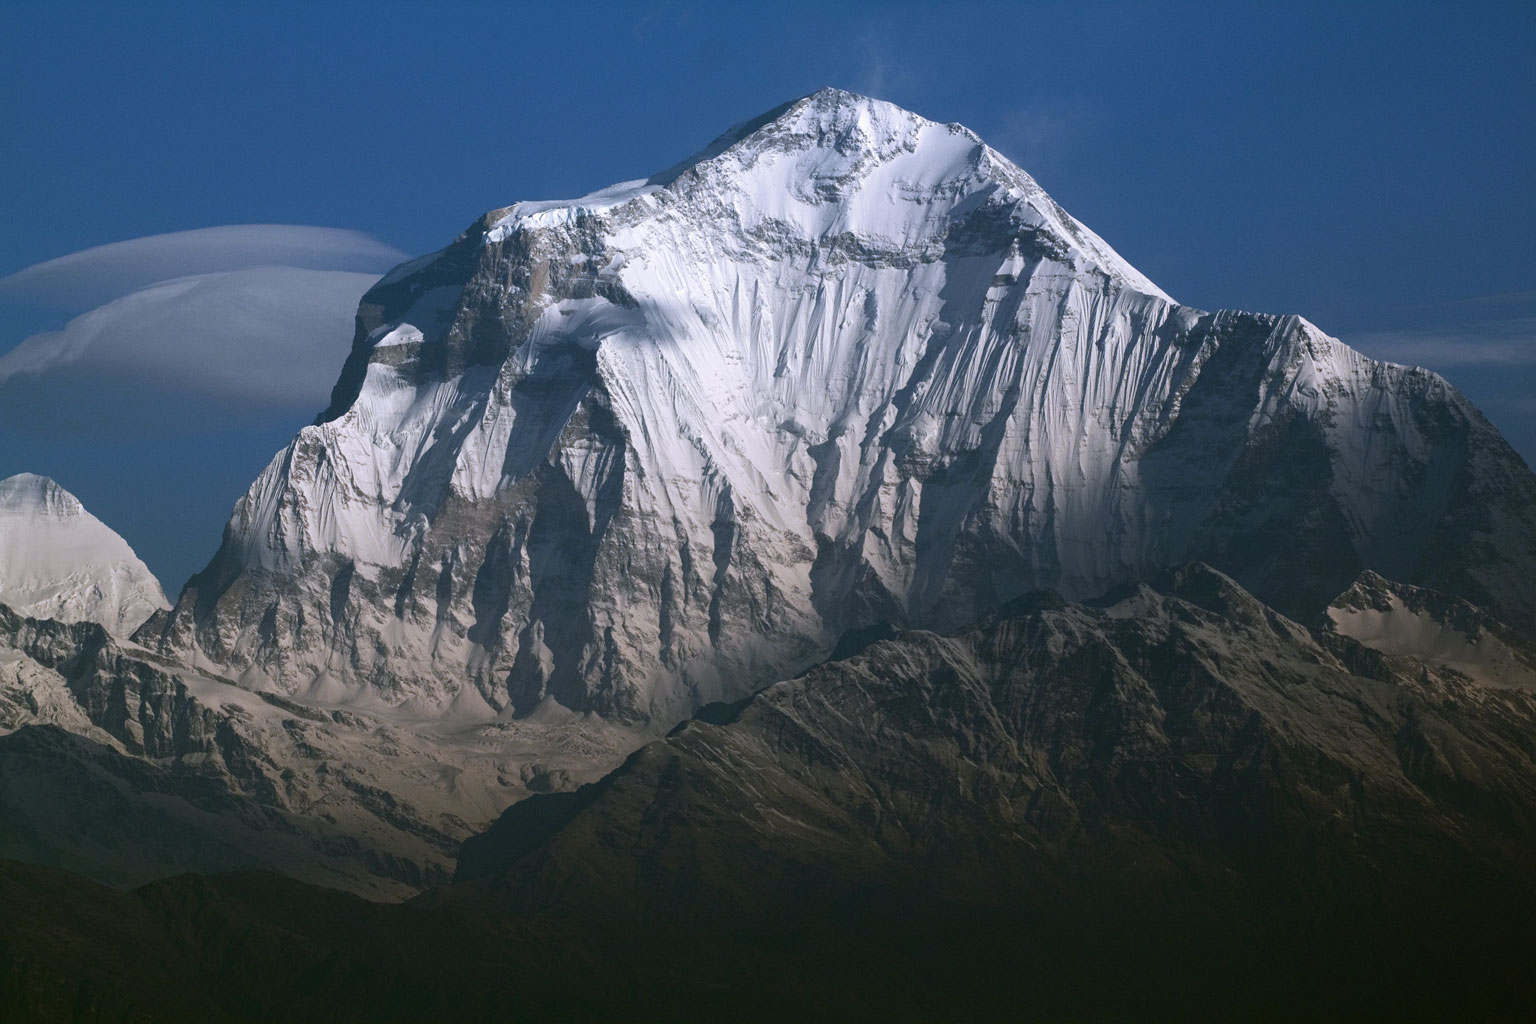 Дхаулагири (Dhaulagiri, 8167 м) - седьмая по высоте вершина мира. 